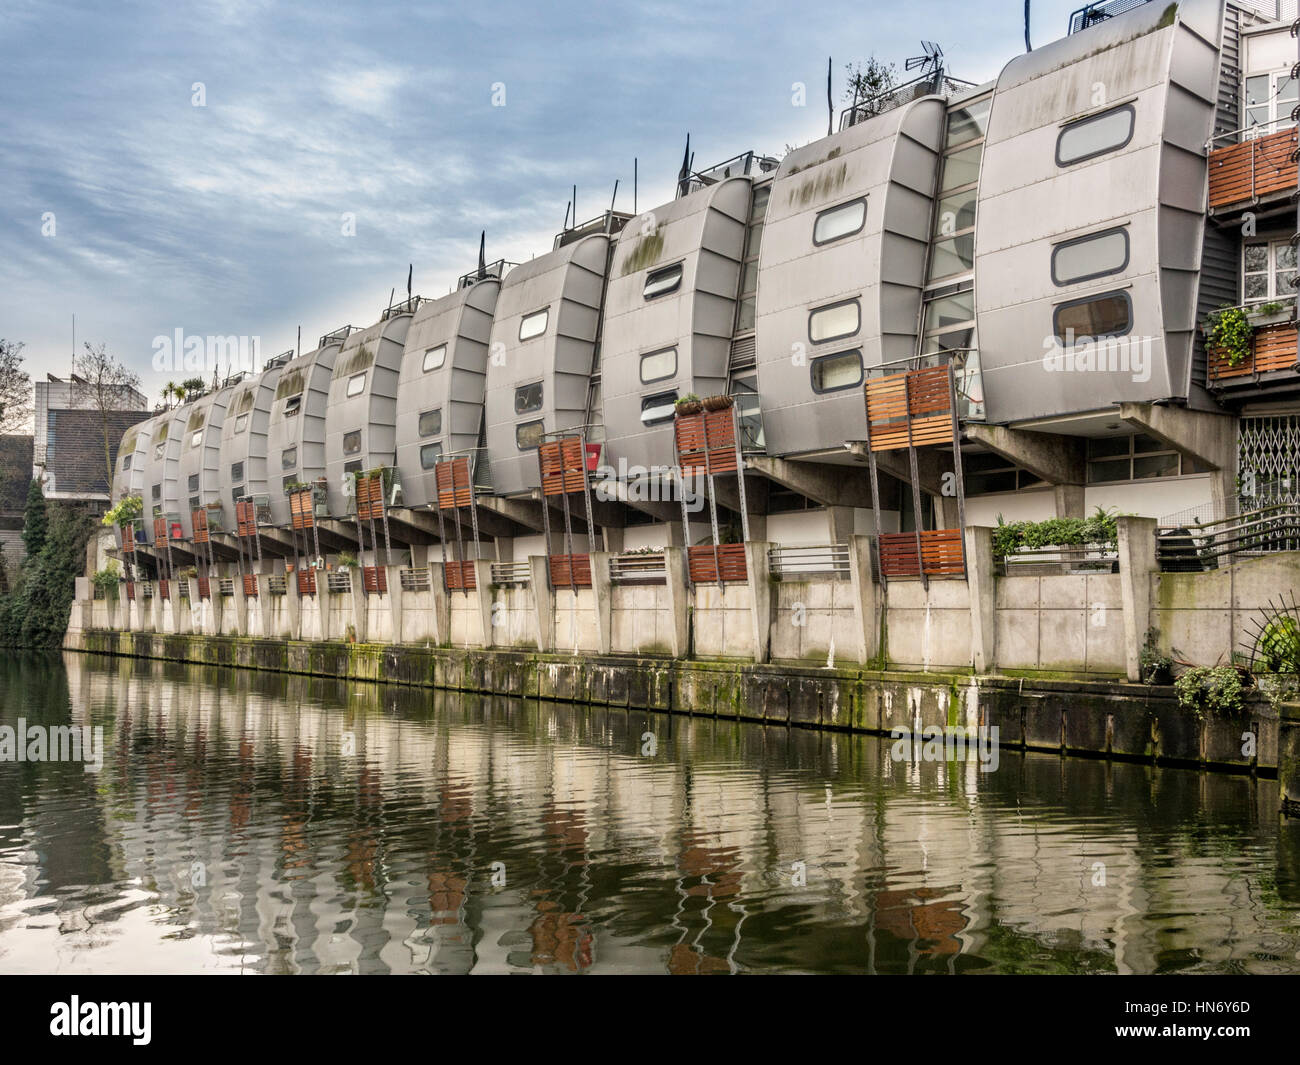 Eine Reihe von Stadthäusern, die 1988 nach einem Entwurf des renommierten Architekten Sir Nichola Grimshaw am Canal Grande erbaut wurden. London. Stockfoto